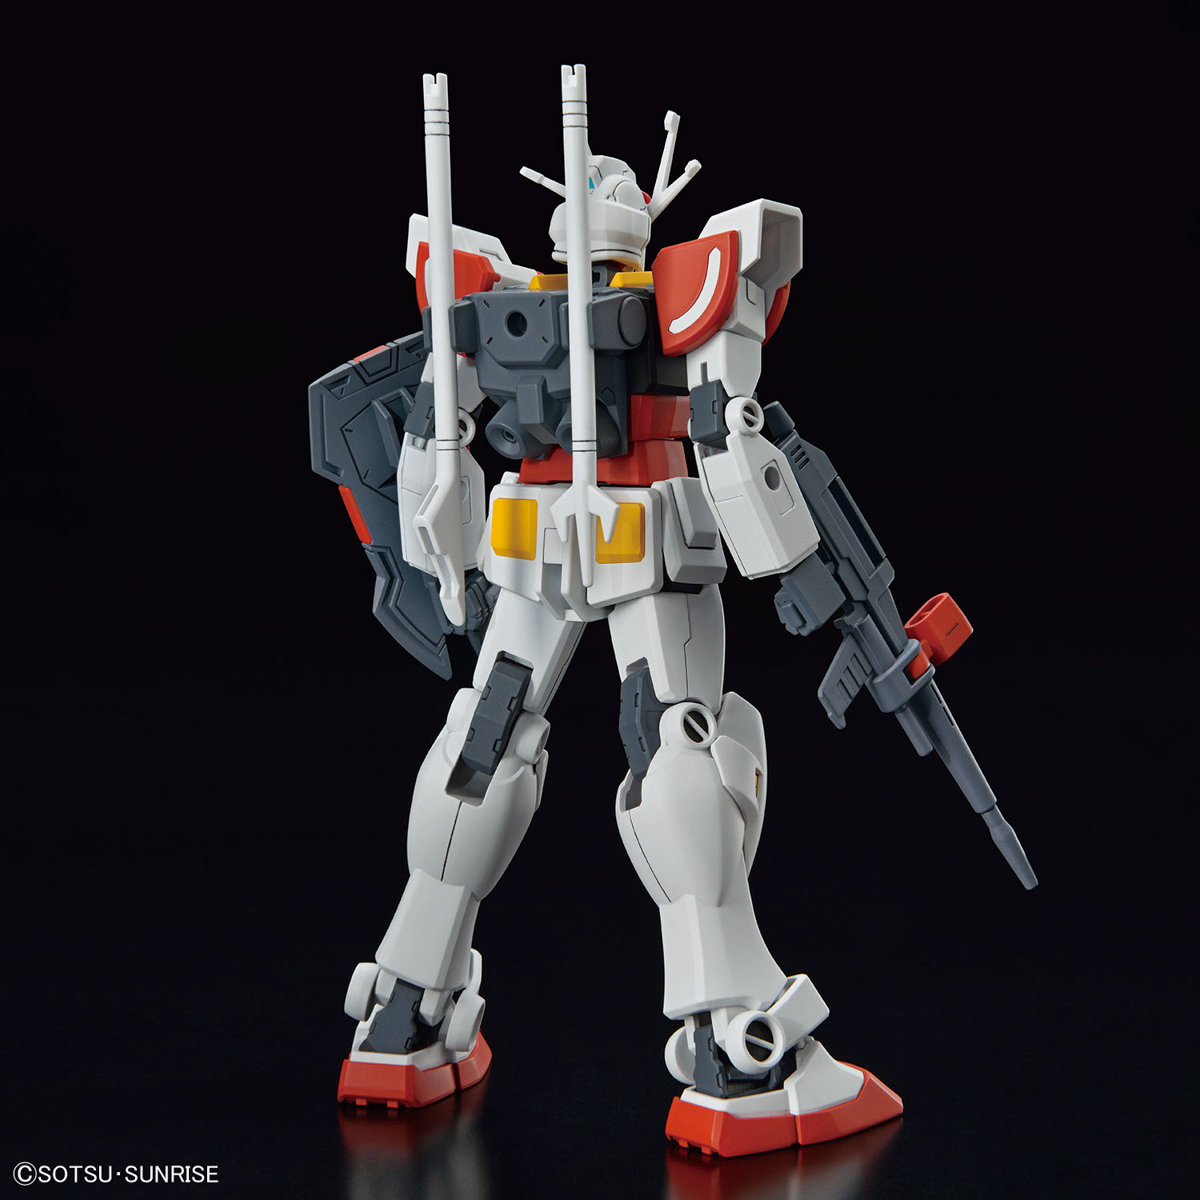 1/144 ENTRY GRADE #1 LAH HGBF 1/144 (Gundam Build Metaverse)